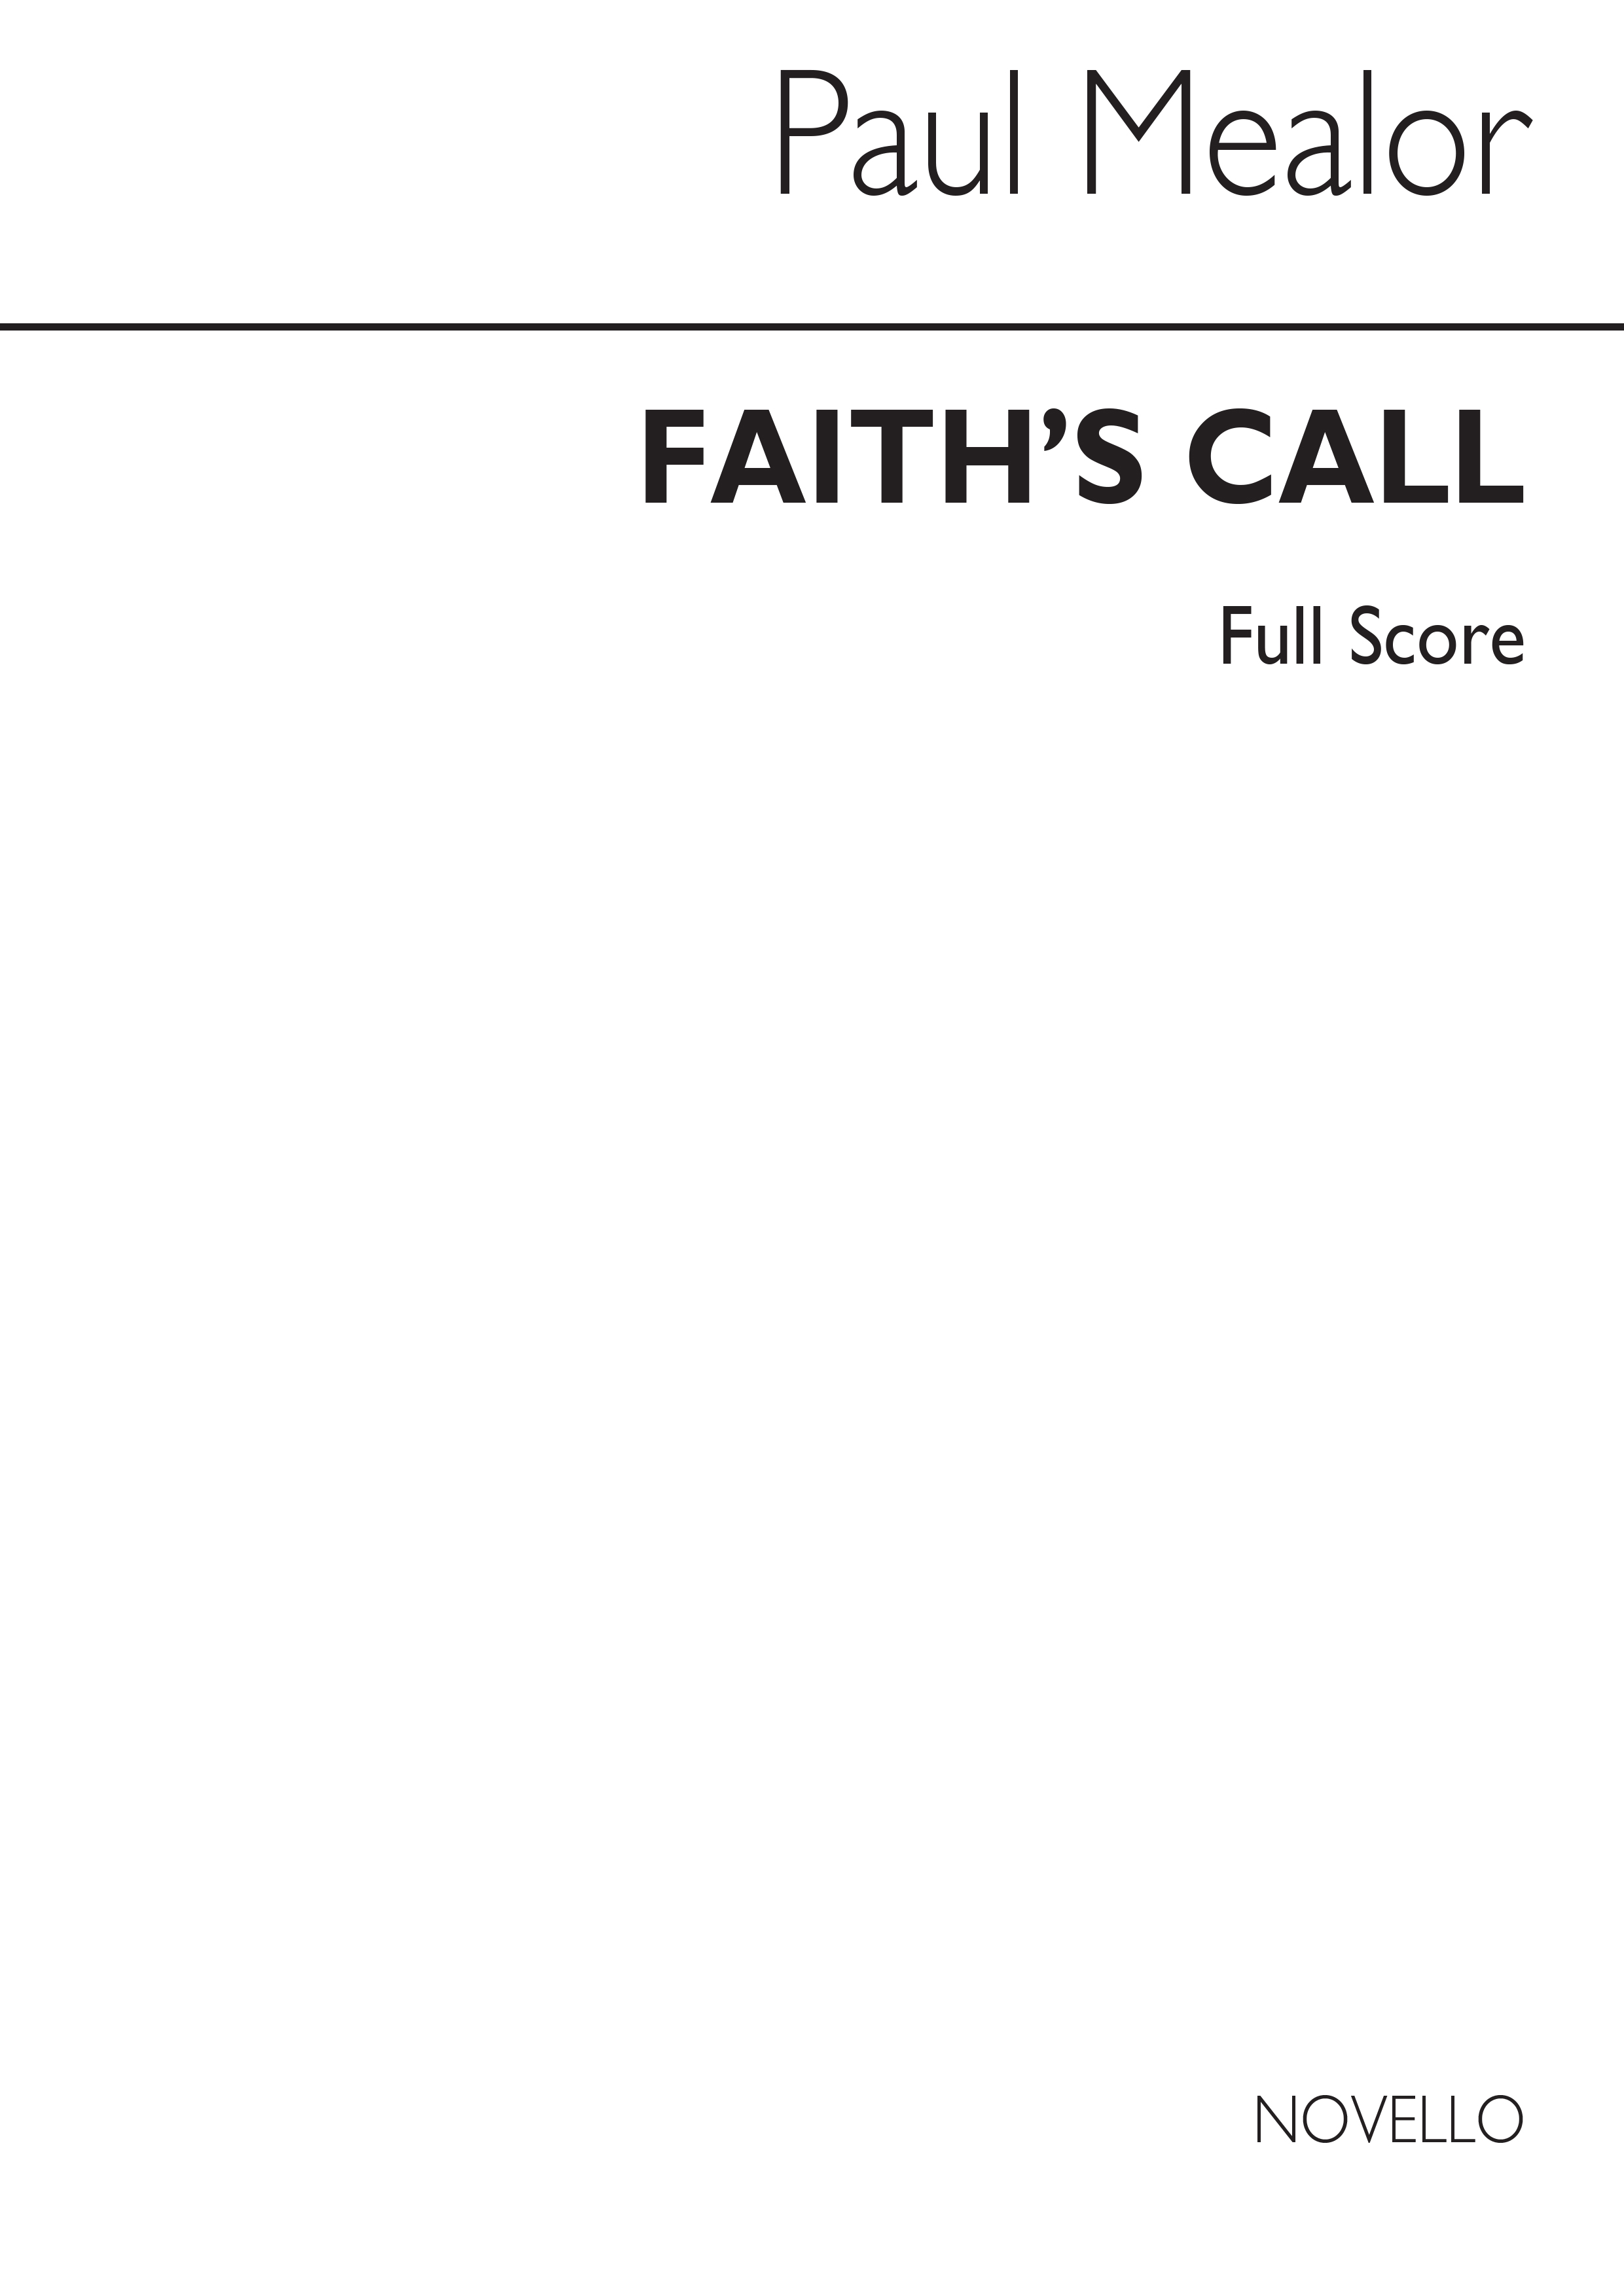 Paul Mealor: Faith's Call (Full Score)